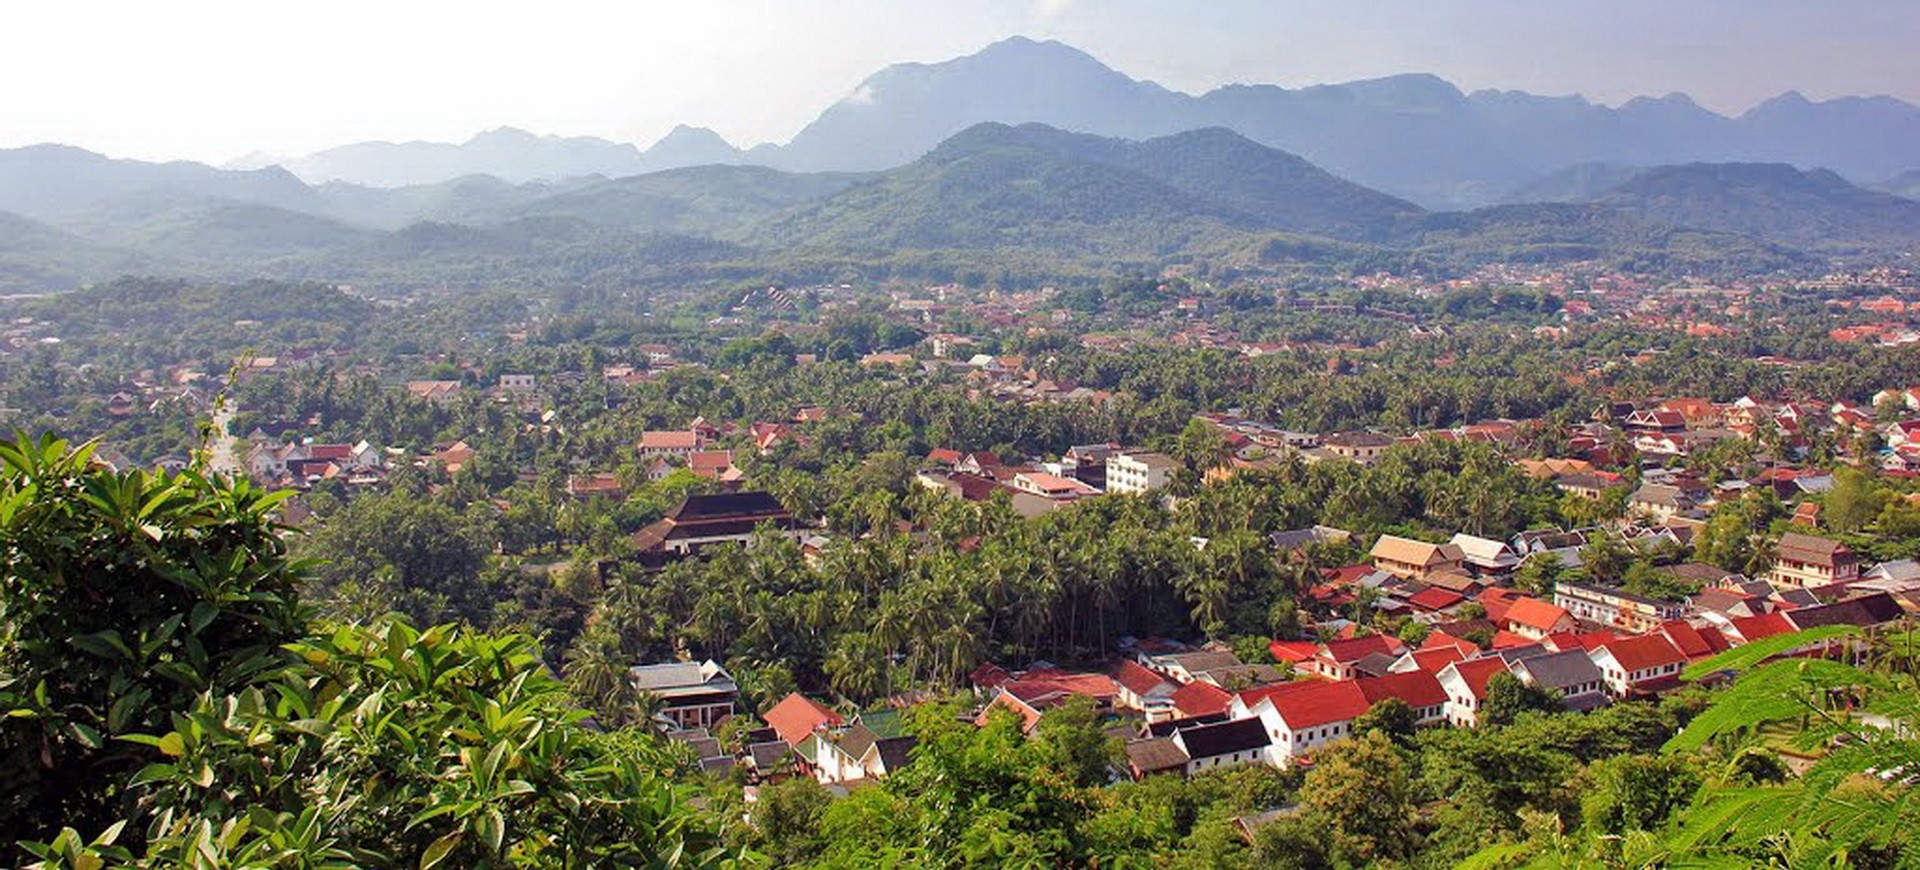 Laos Luang Prabang Phousi